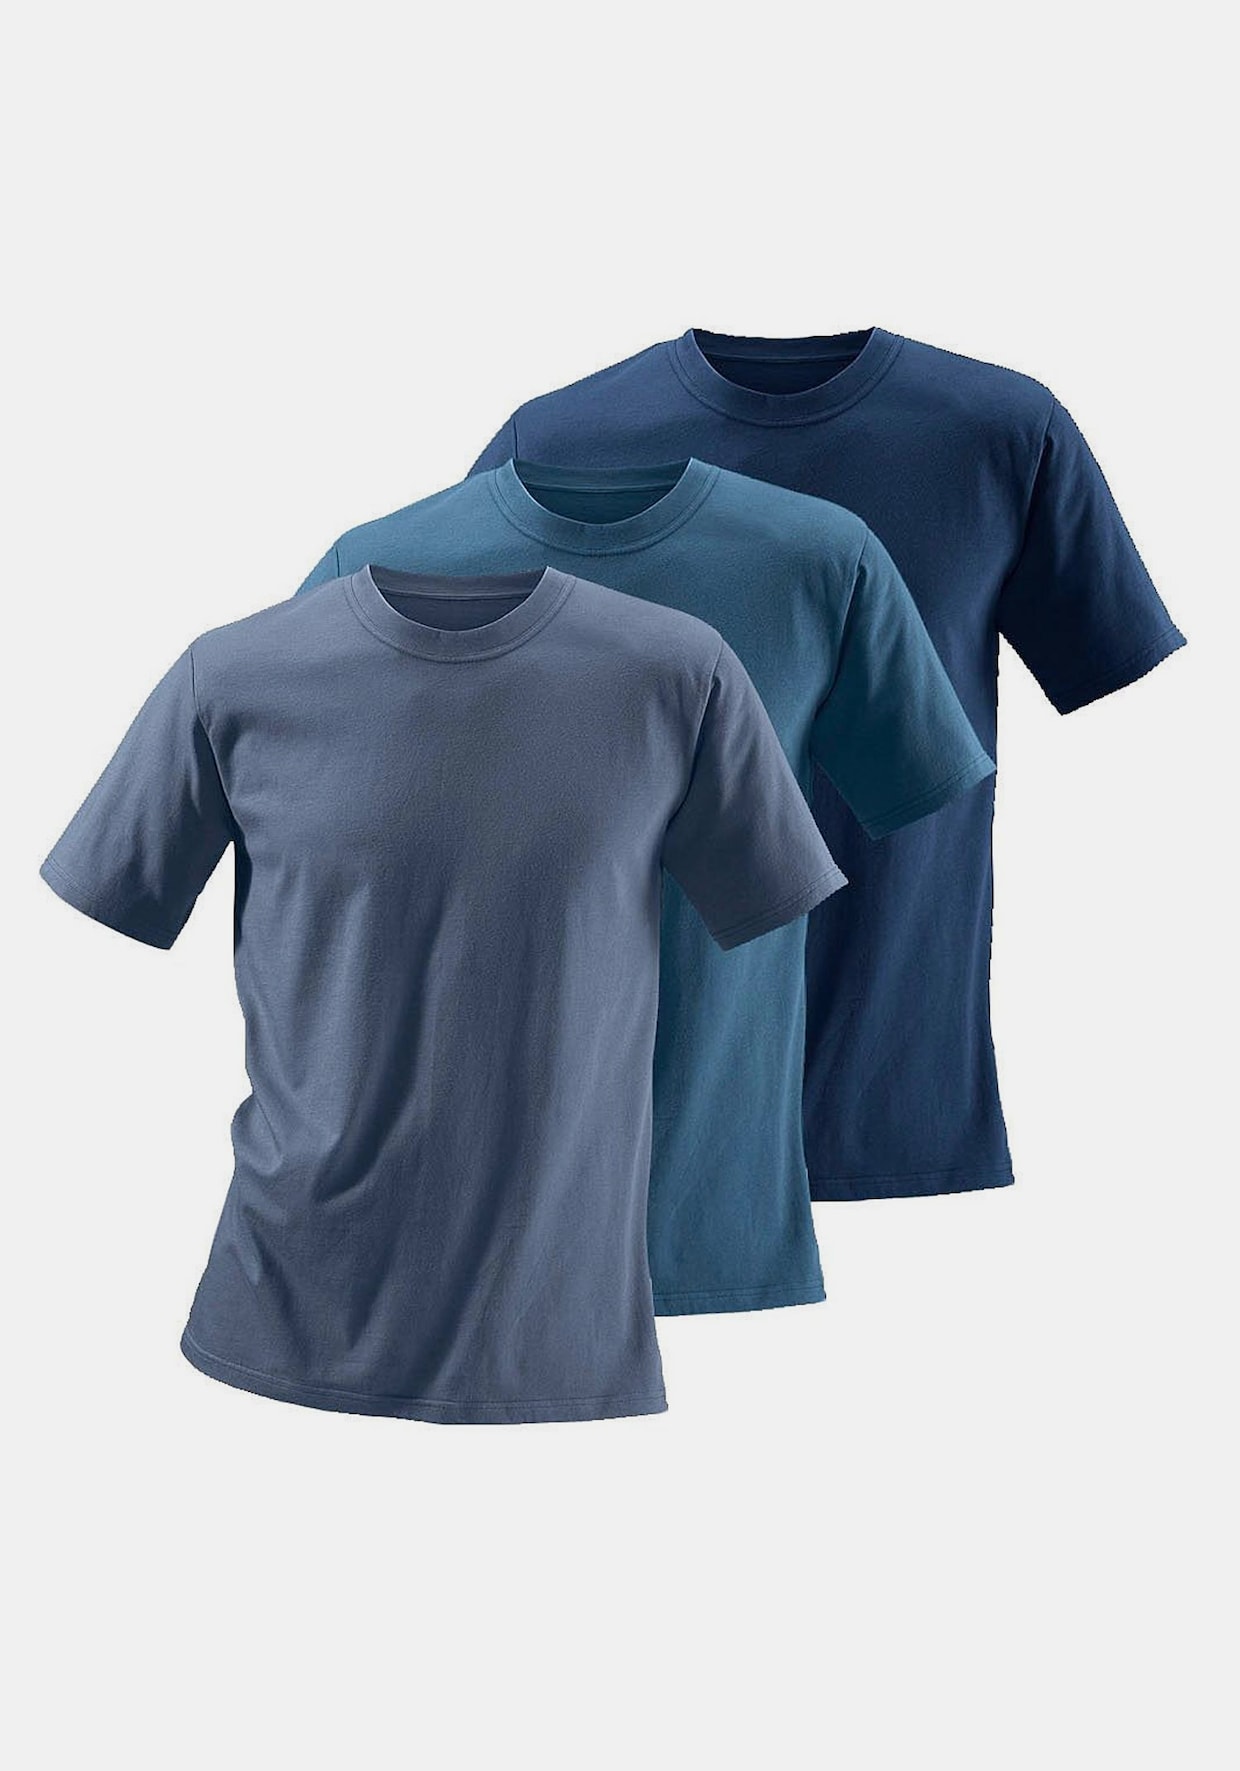 H.I.S T-Shirt - 1x dunkelblau + 1x mittelblau + 1x graublau